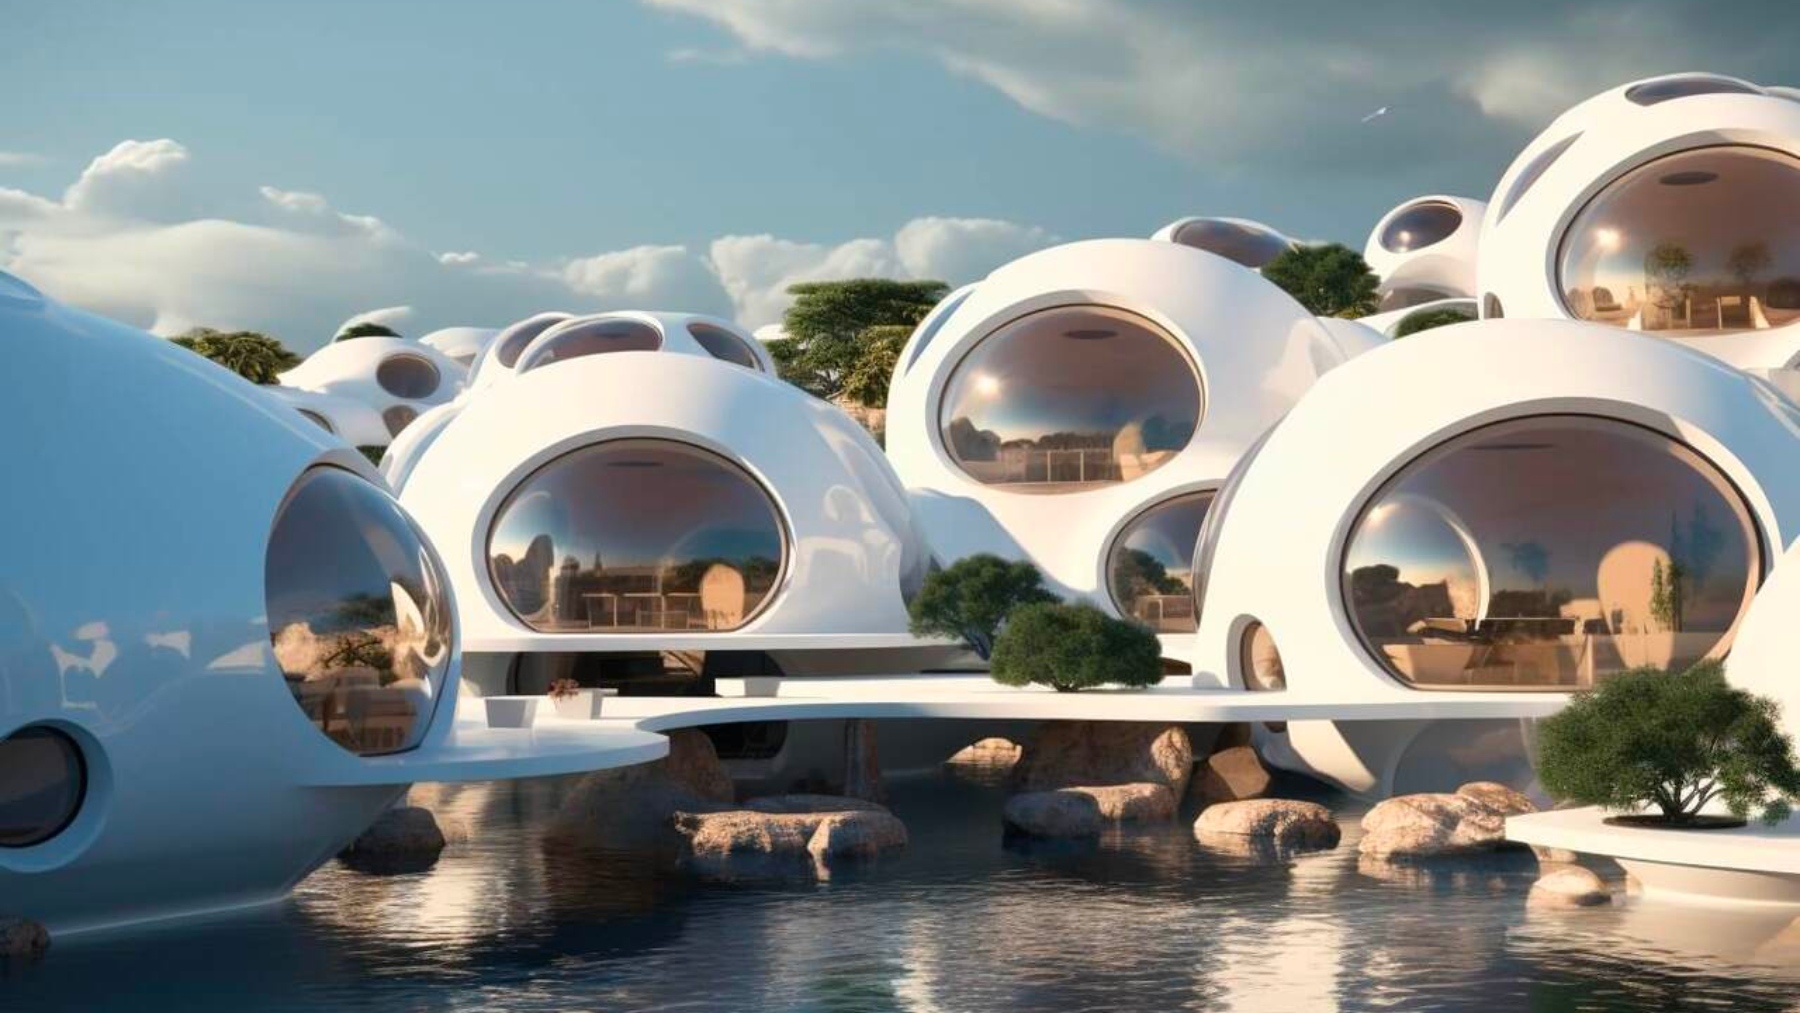 ¿Vivirías en una casa-burbuja en mitad de una isla?